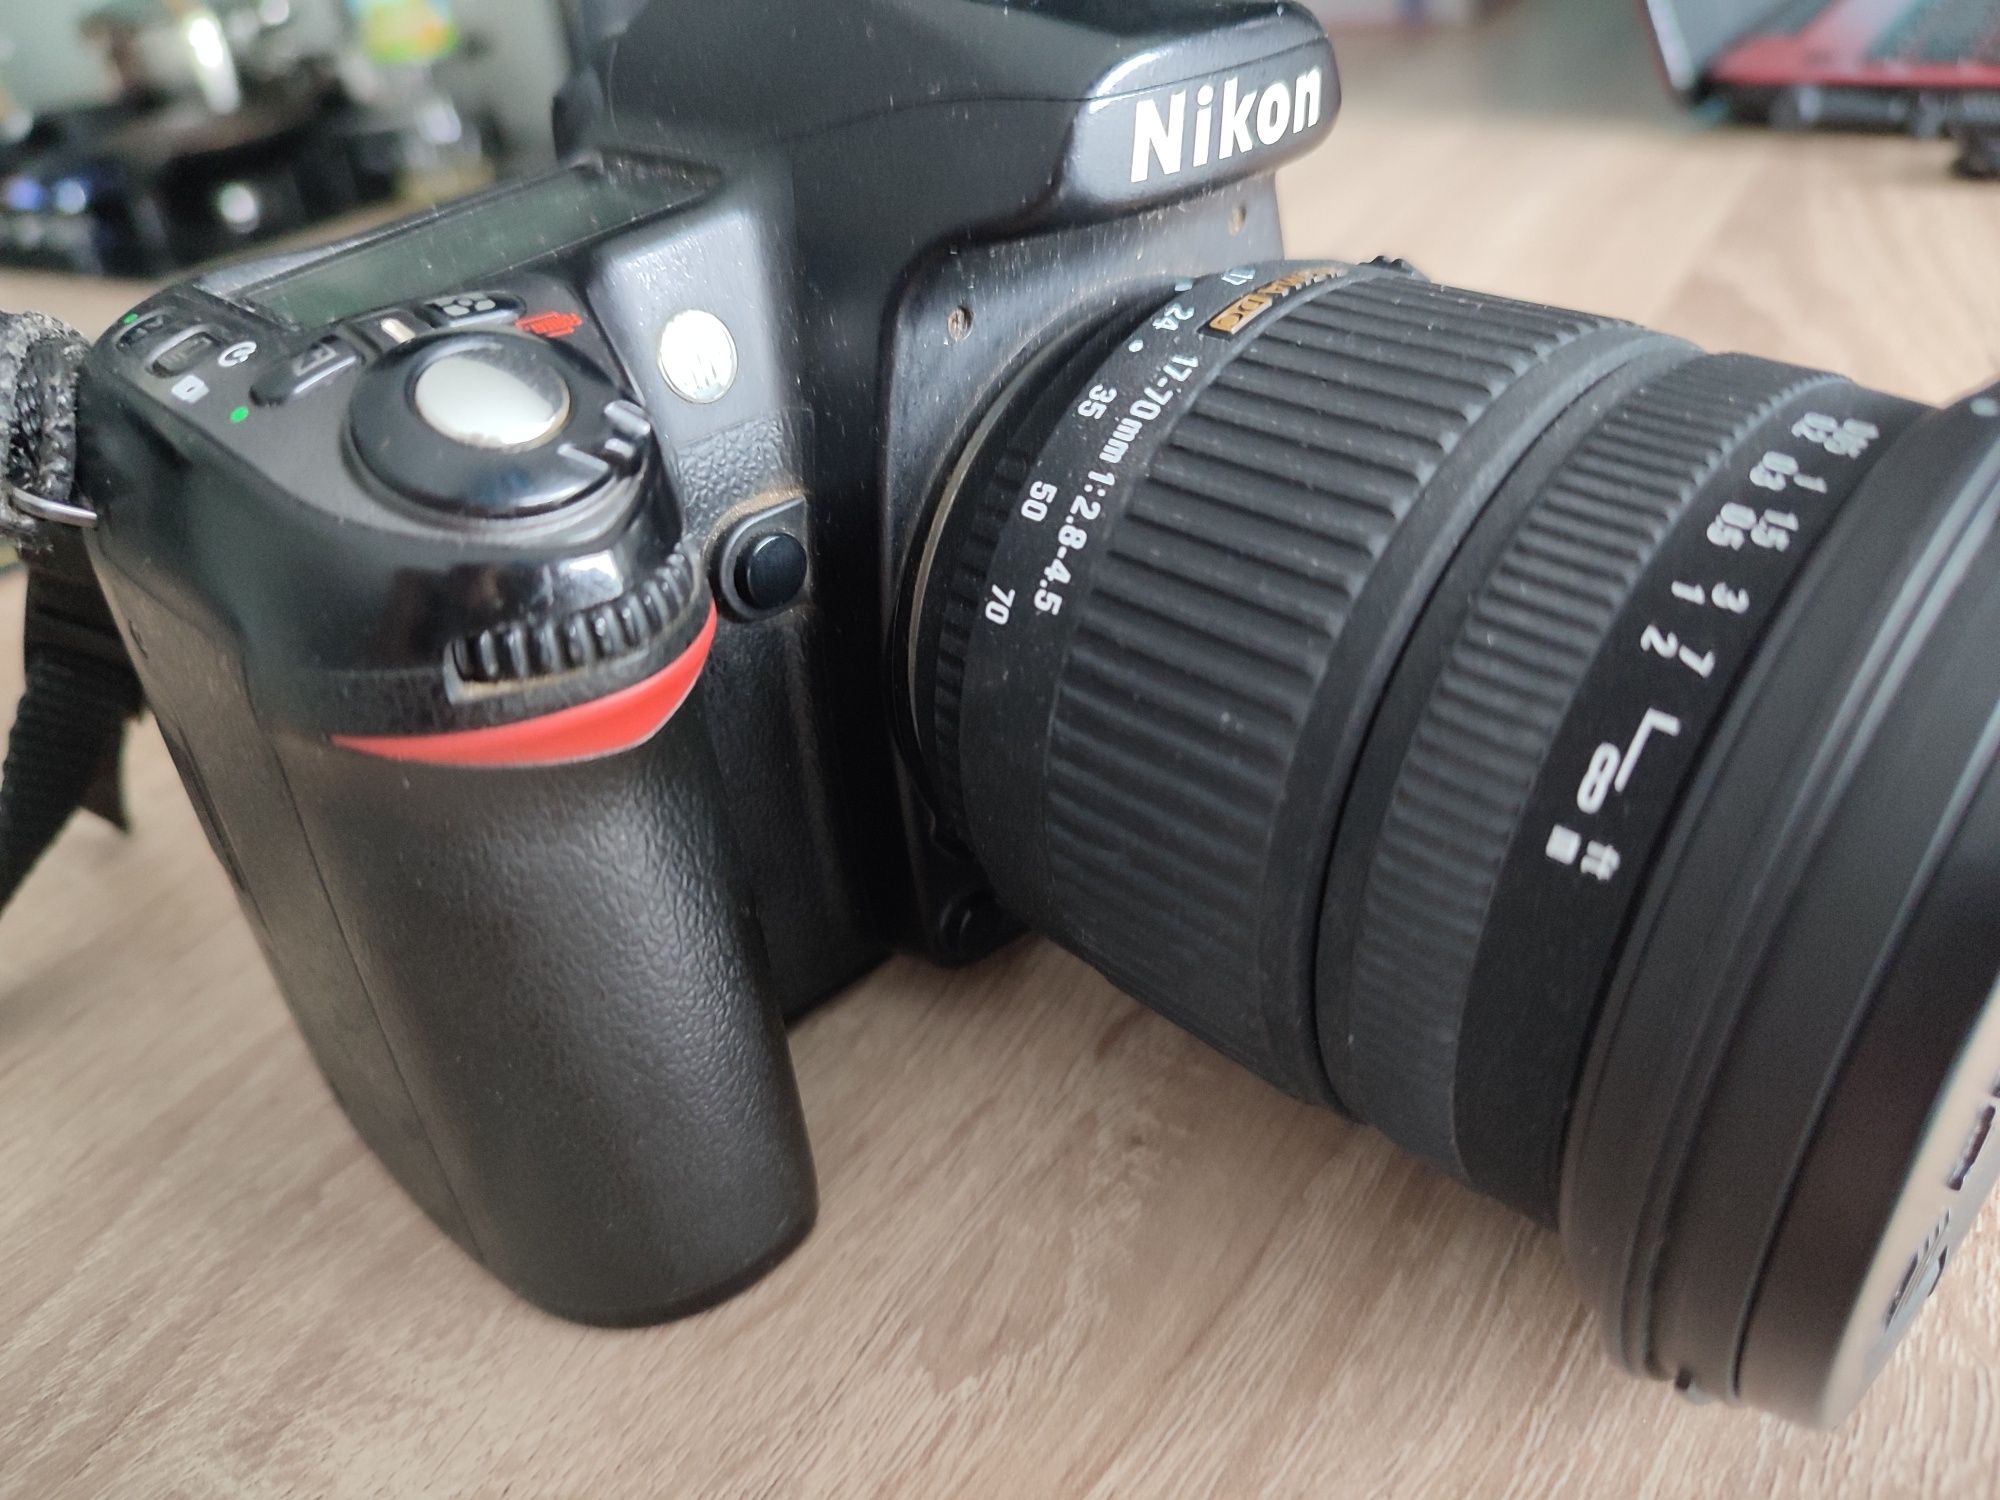 Nikon d80 + sigma 17-70